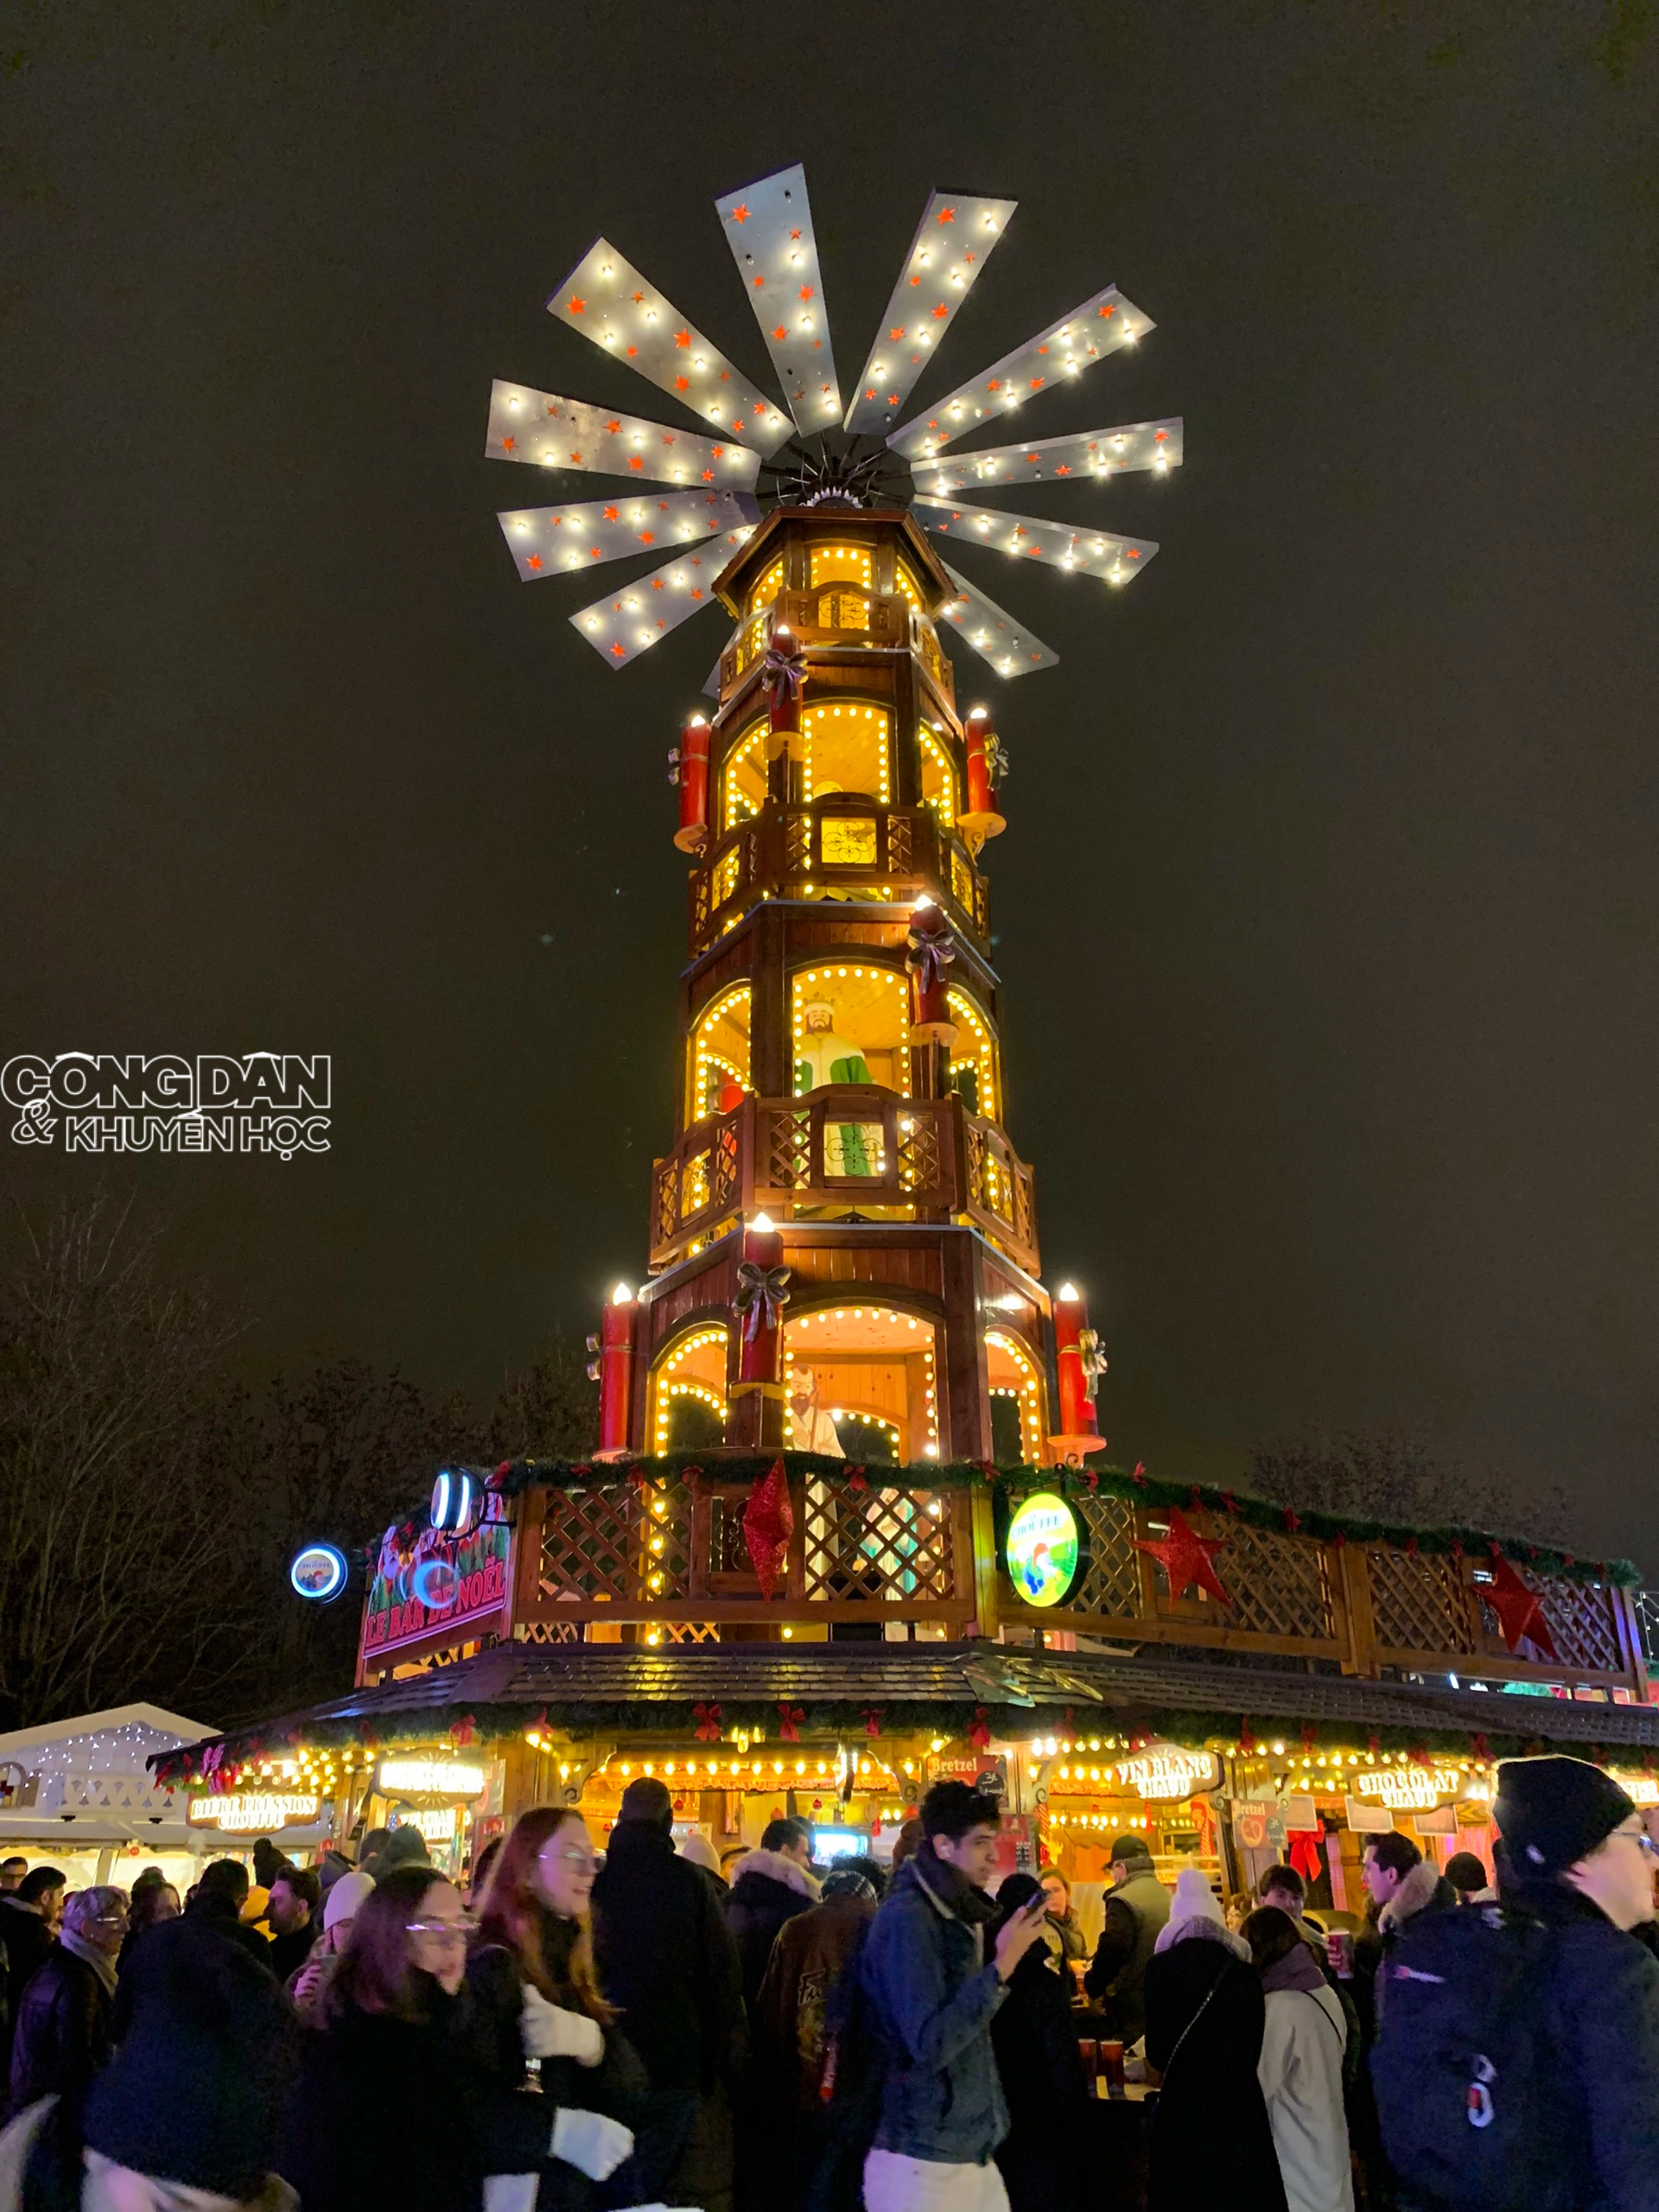 Lung linh phiên chợ Giáng sinh nổi tiếng ở Paris - Ảnh 1.